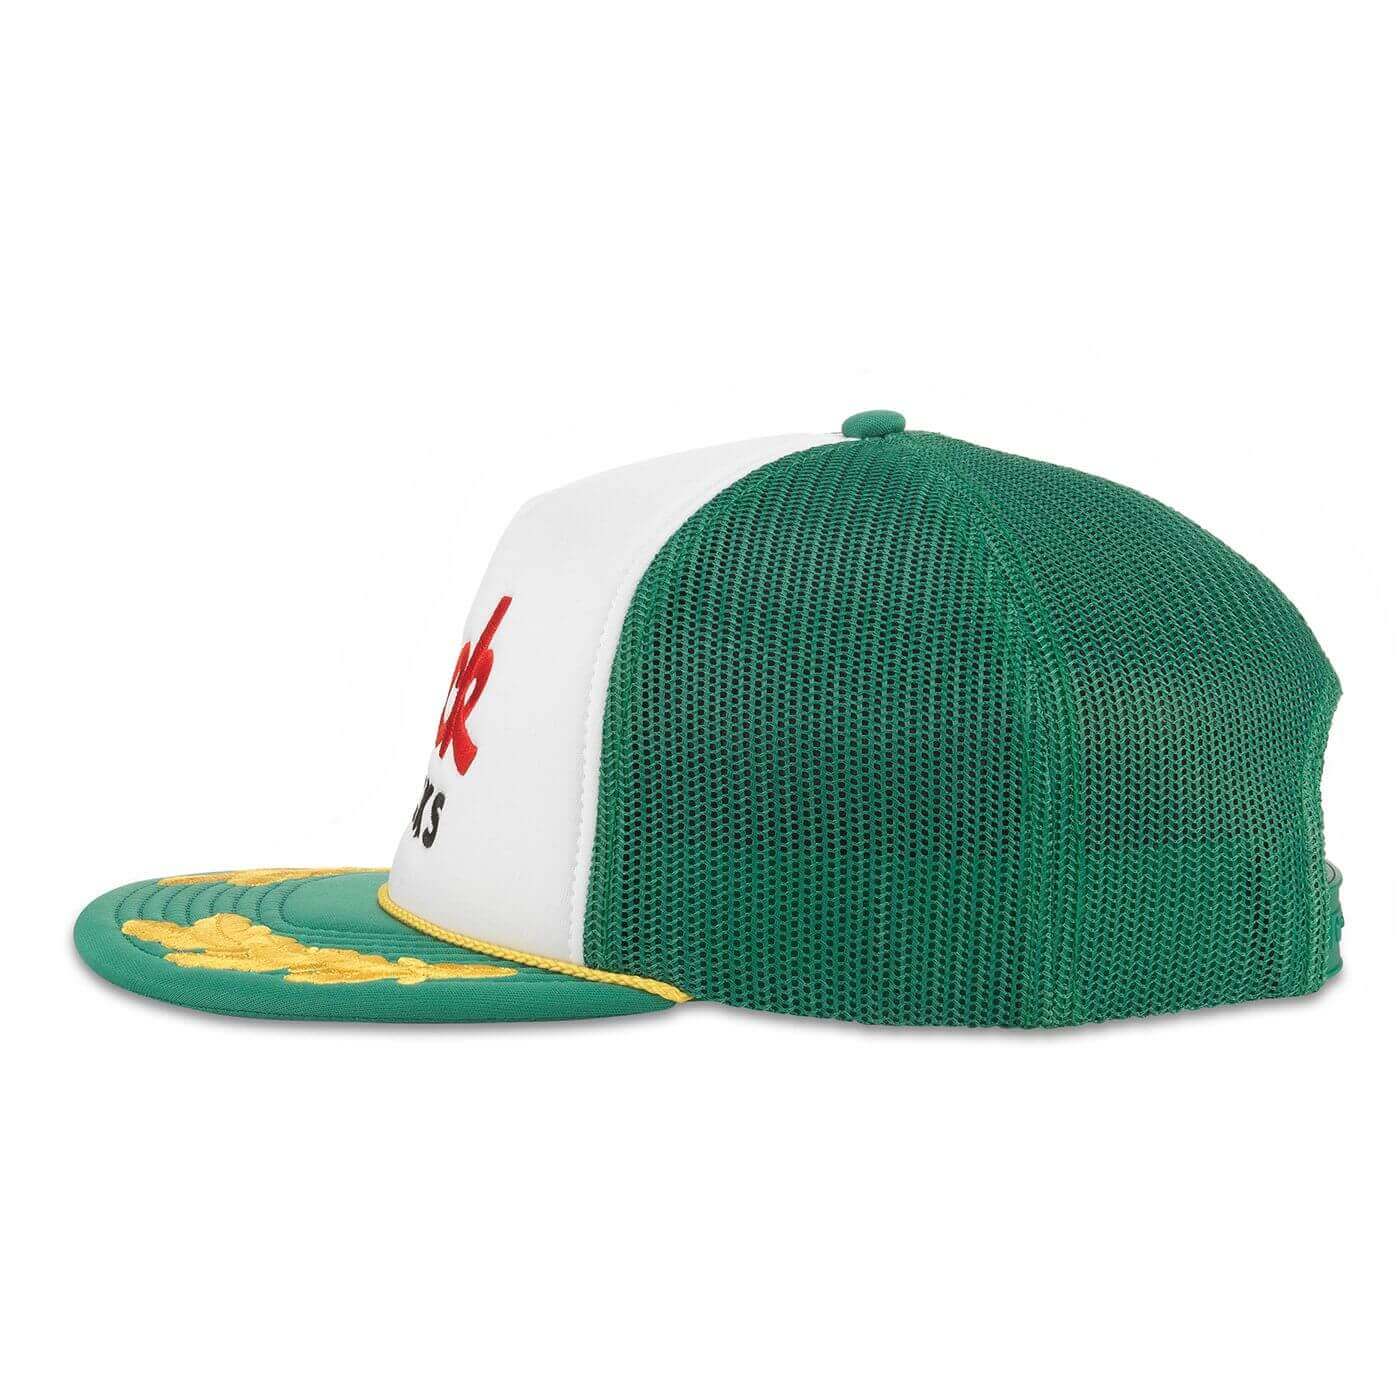 Mack Trucks Hat: Green/White/Gold Snapback Foam Trucker Hat Side